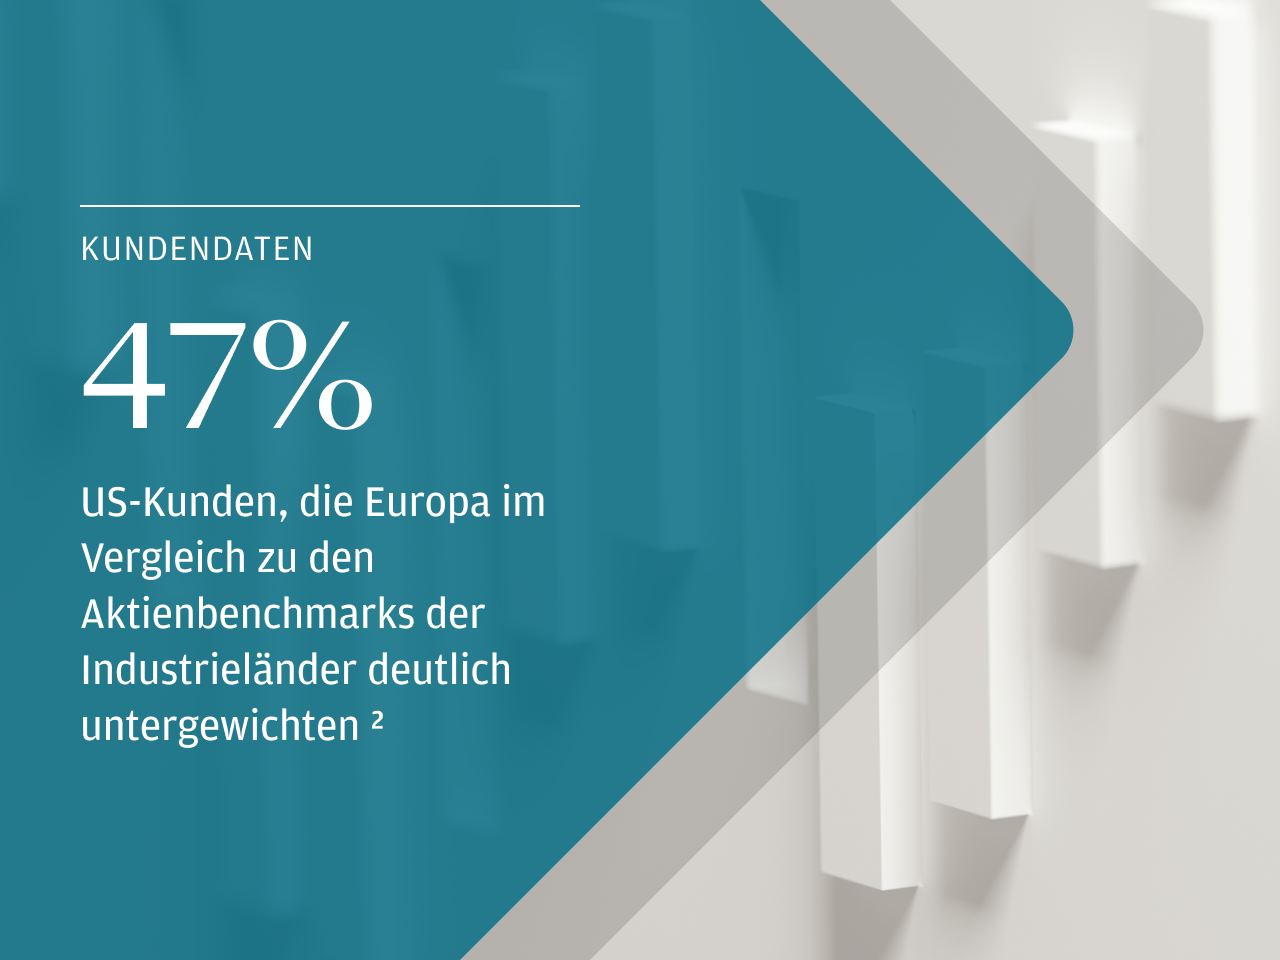 Kundendaten 47% US-Kunden, die Europa im Vergleich zu den Aktienbenchmarks der Industrieländer deutlich untergewichten footnote 2